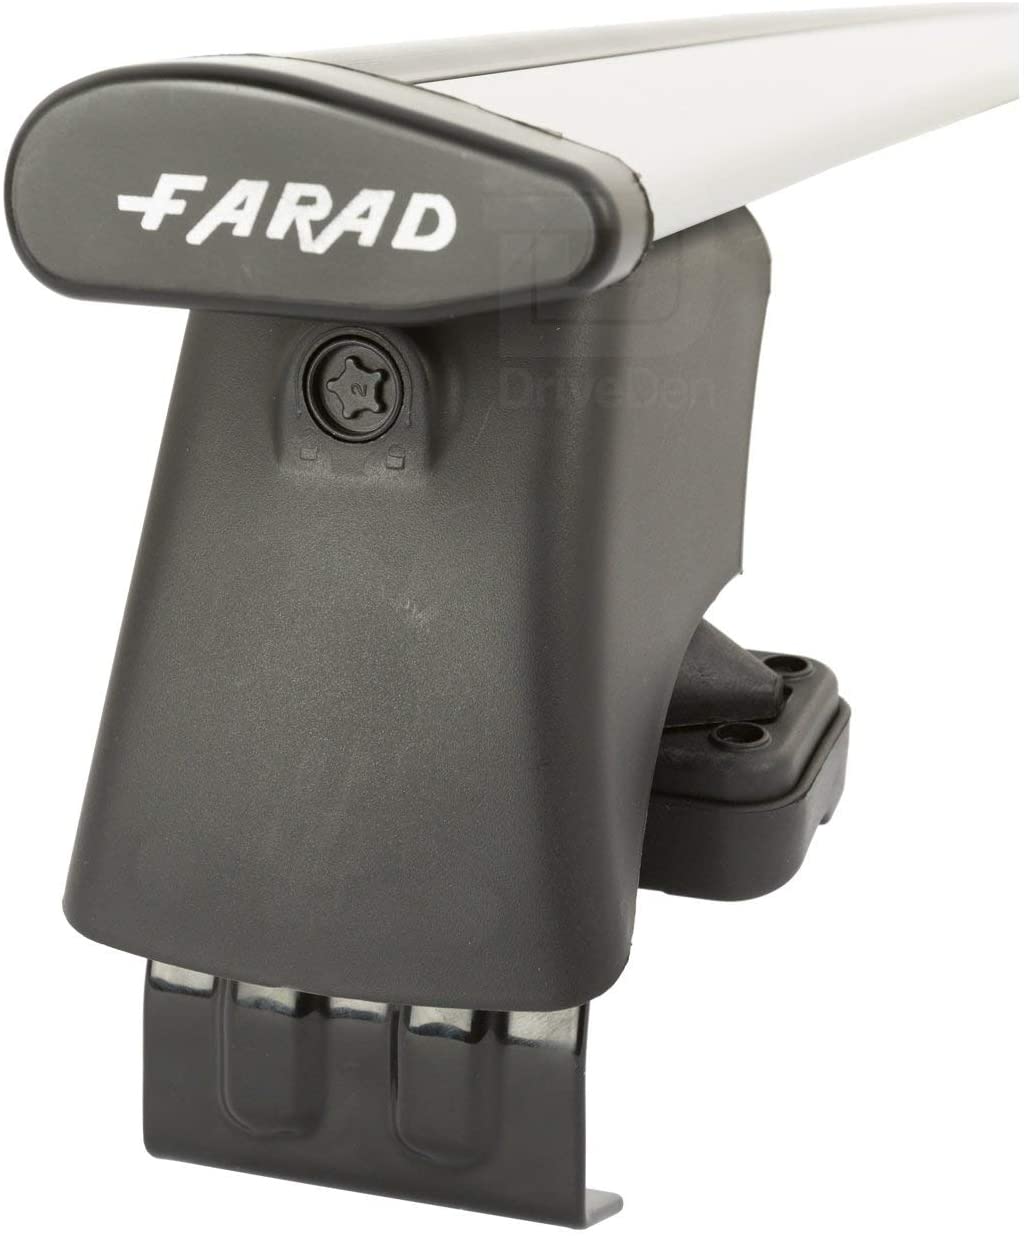 FARAD-Kit H2 per barre portatutto - Kia Rio 2011-2017 (senza corrimano)